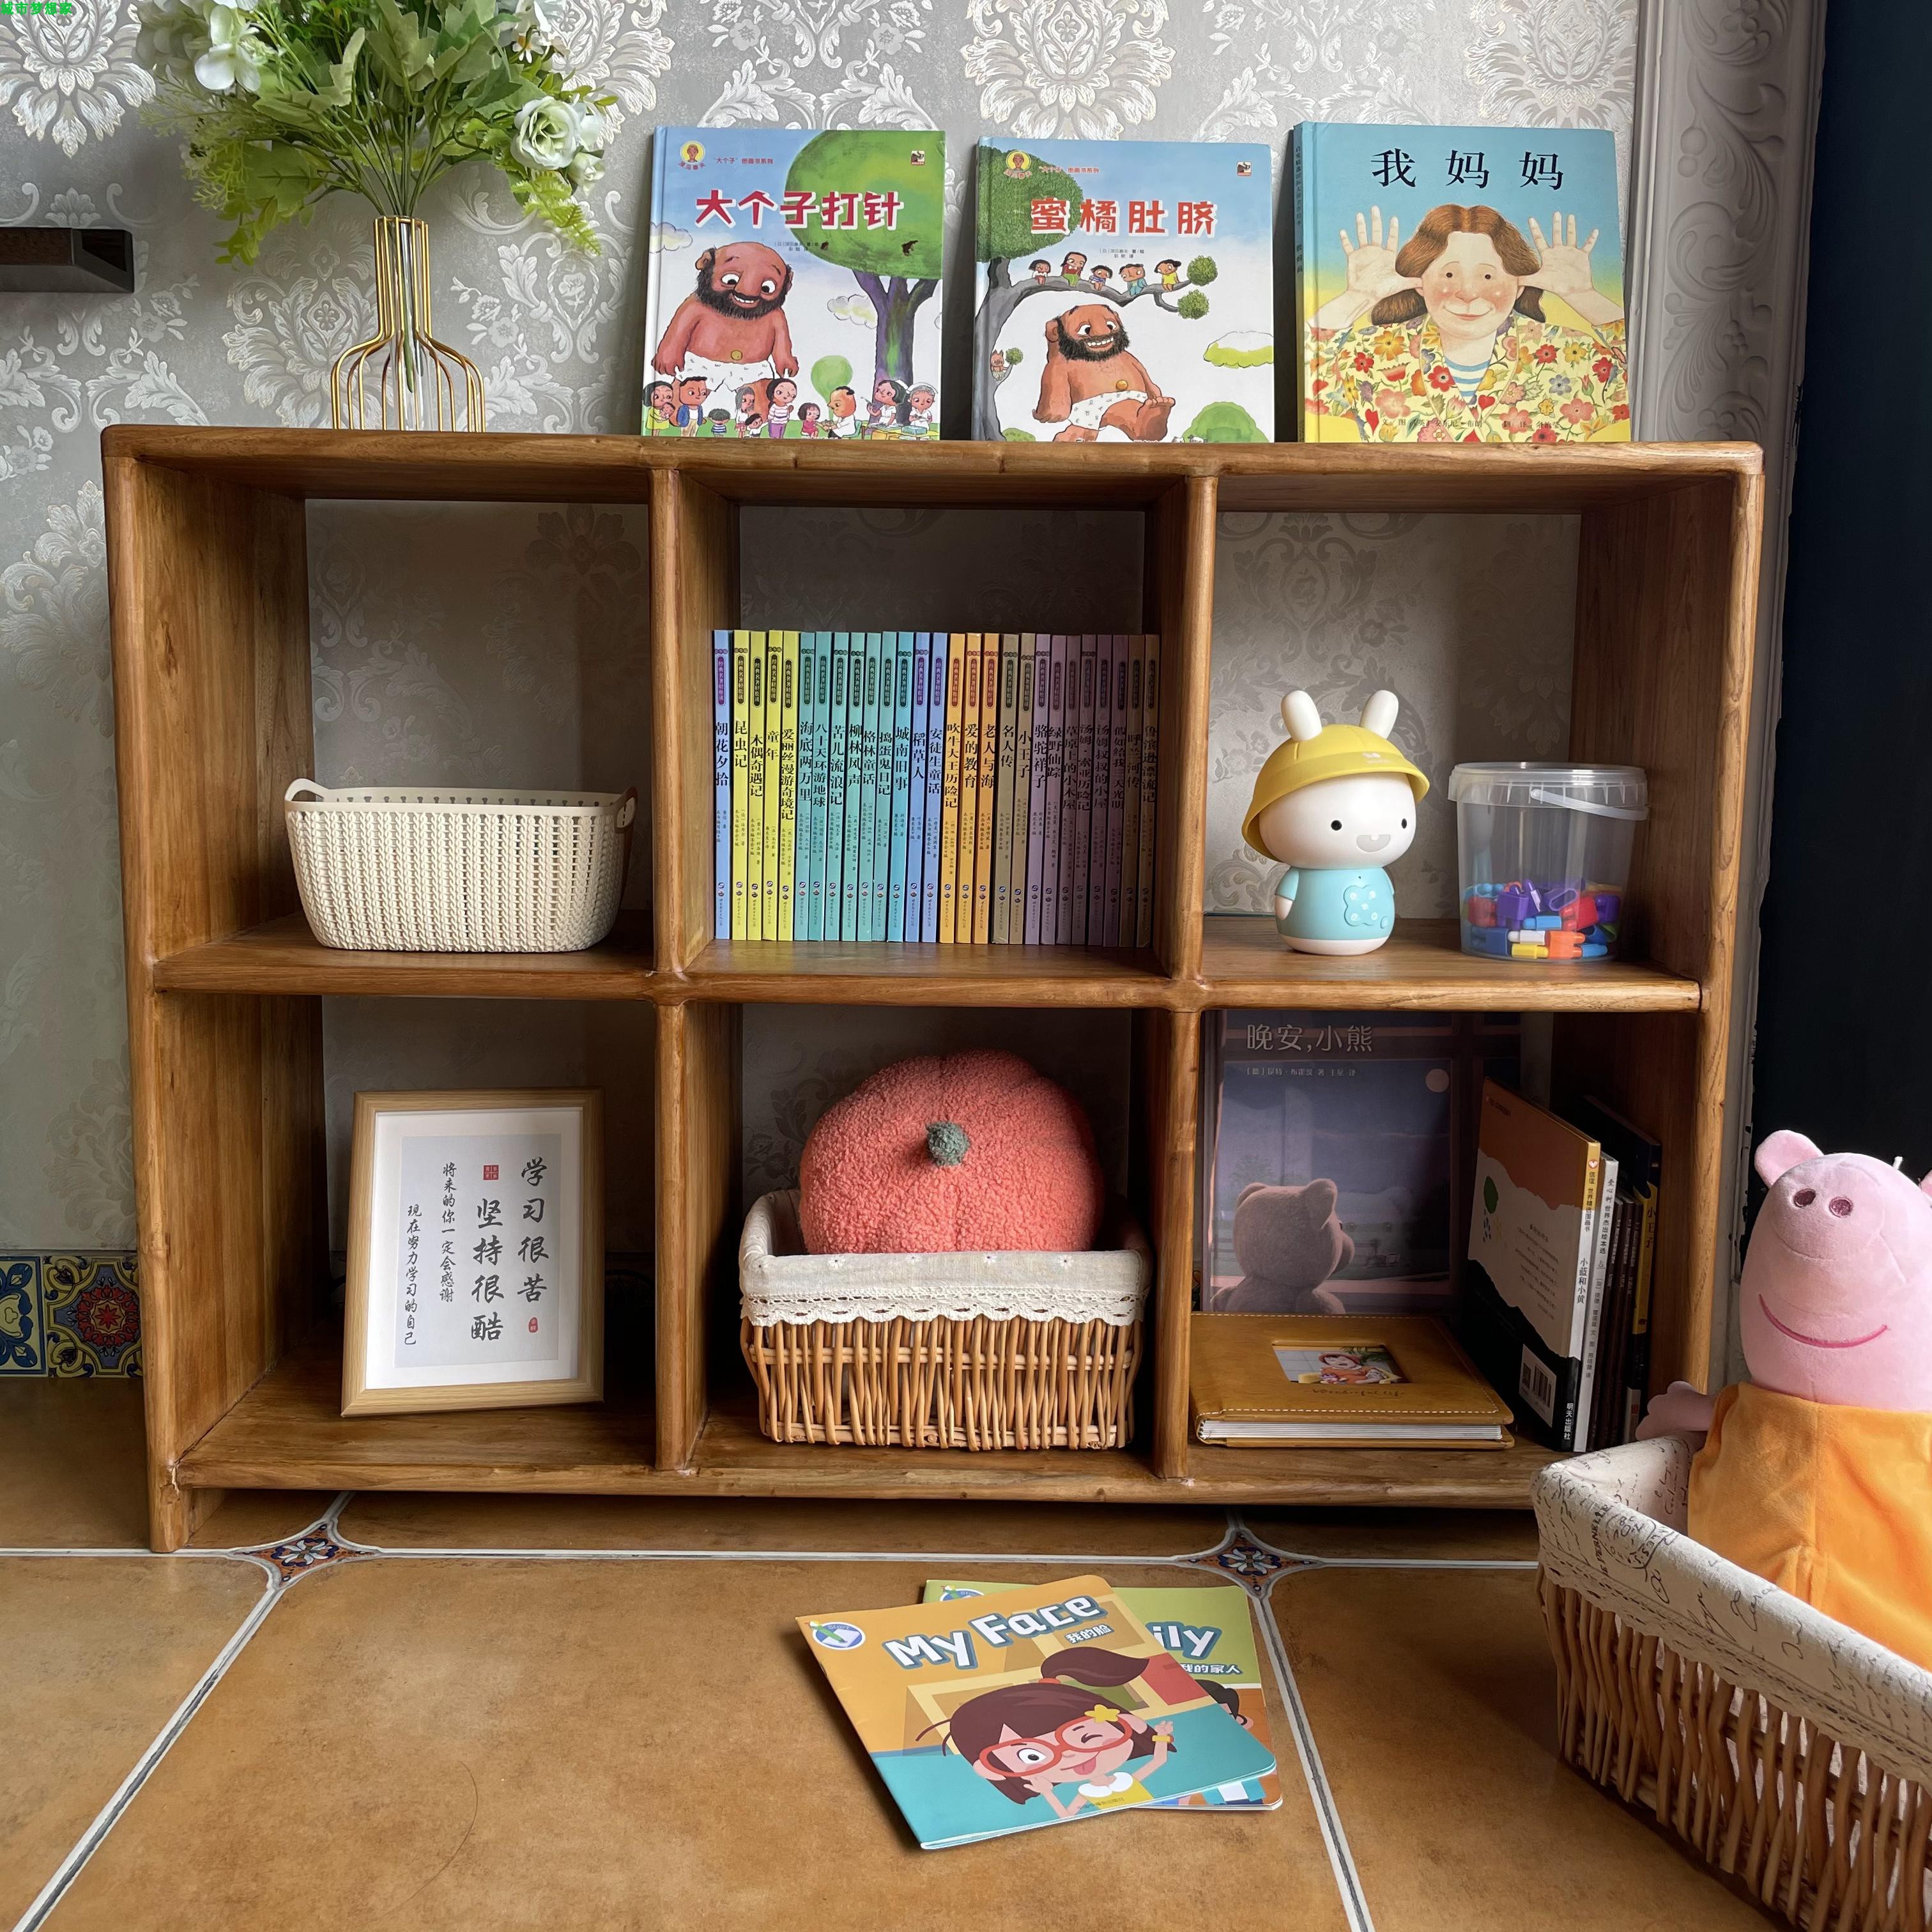 老榆木落地式实木书架收纳置物架现代矮柜组合环保儿童玩具收纳架